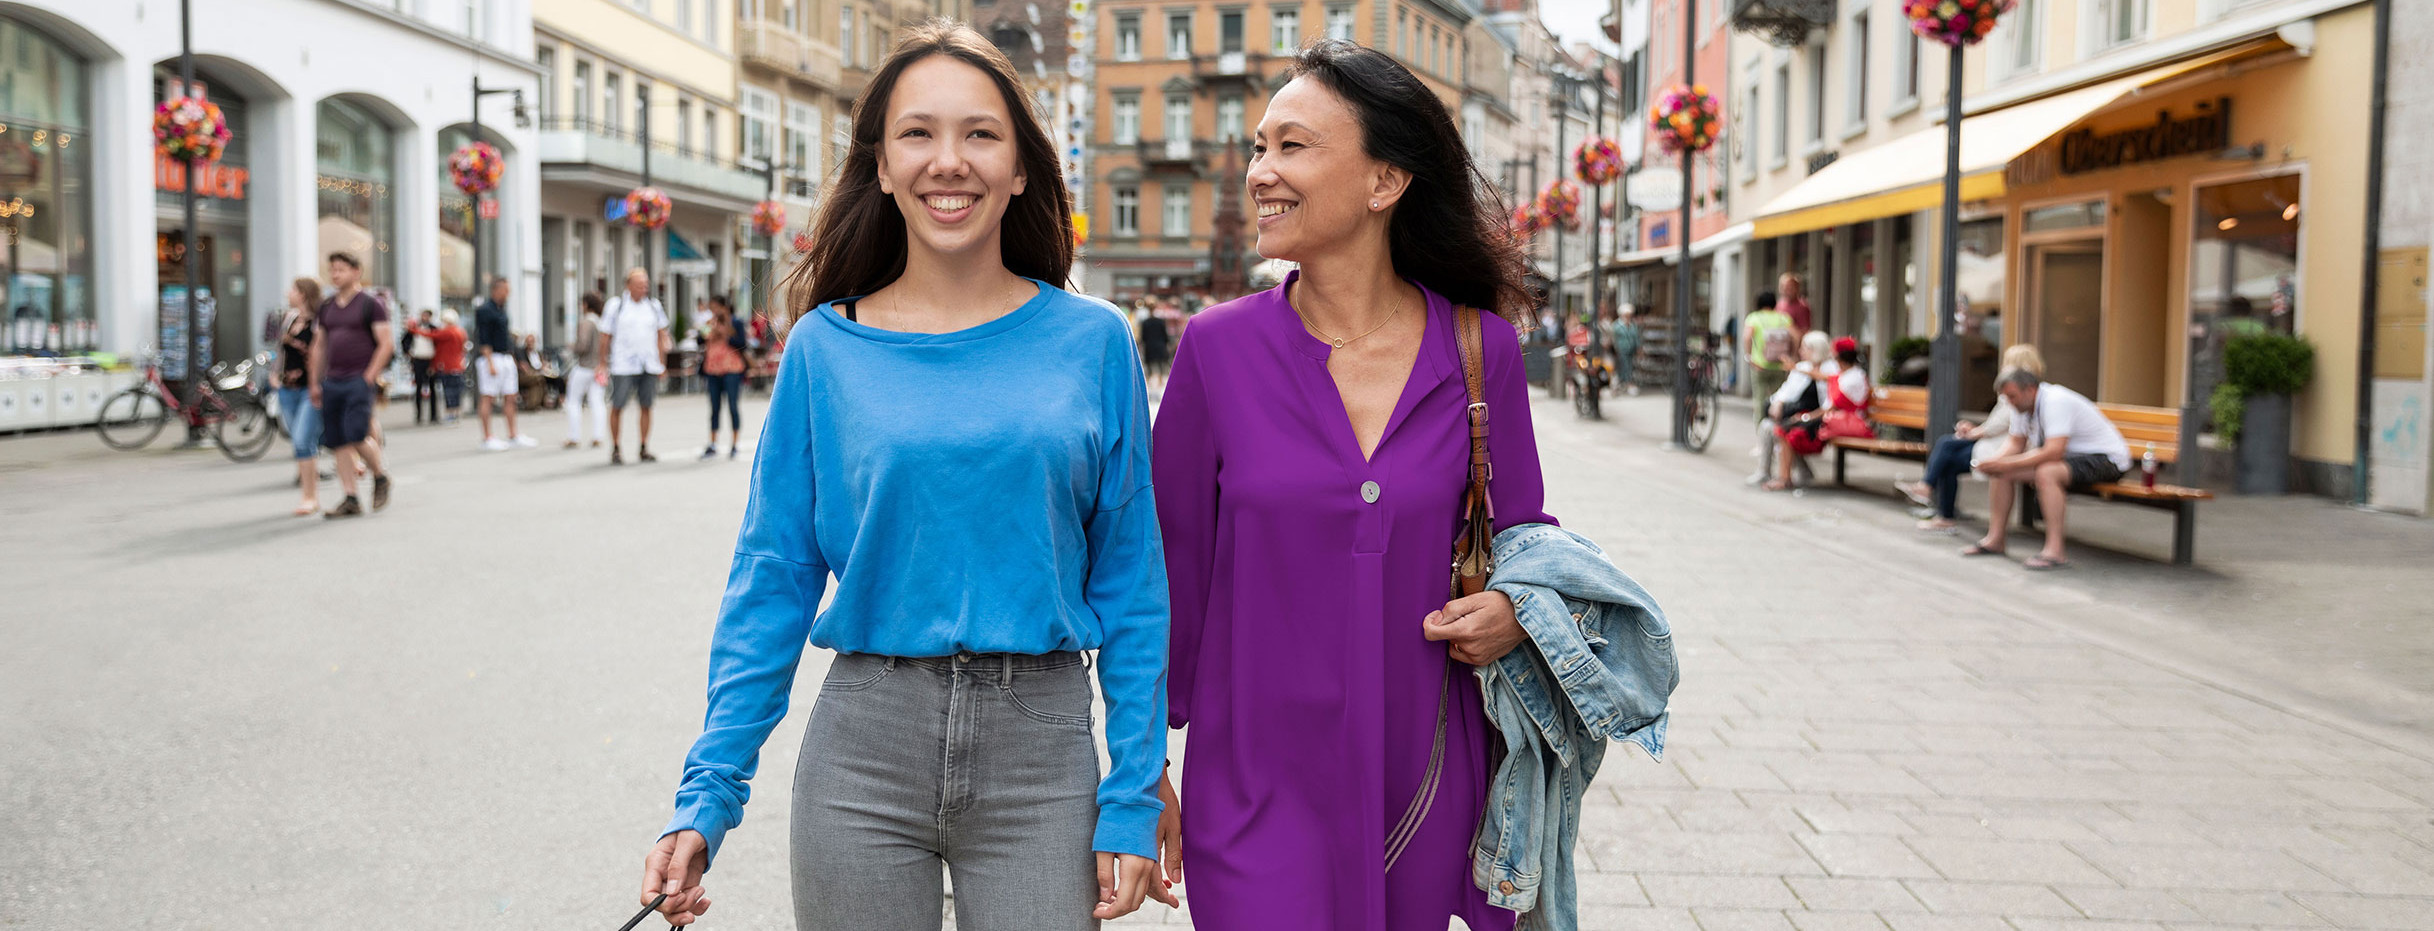 Zwei Frauen spazieren in einer Fußgängerzone.